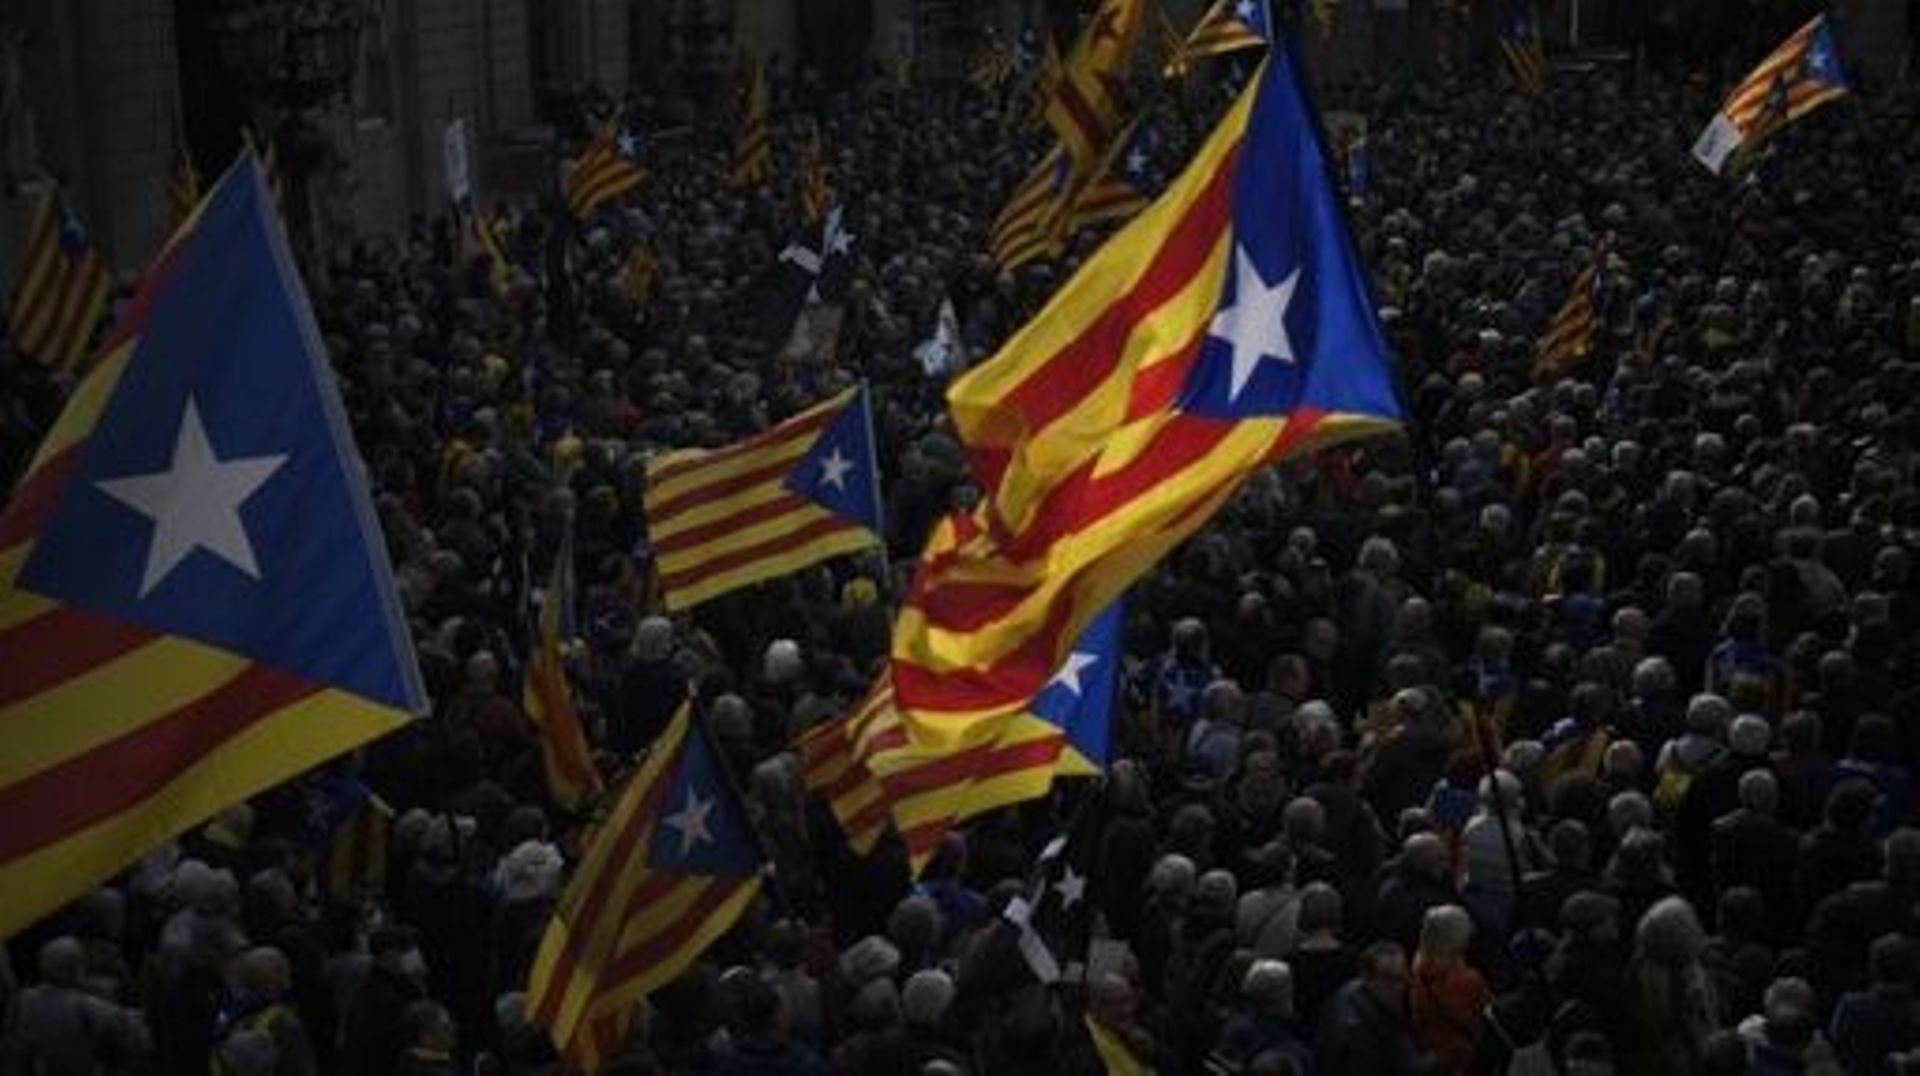 Des manifestants agitent des drapeaux pro-indépendantistes catalans "Estelada" lors d’un rassemblement contre les modifications de la loi sur la sédition, appelé par l’Assemblée nationale catalane (ANC) et d’autres organisations séparatistes catalanes à B